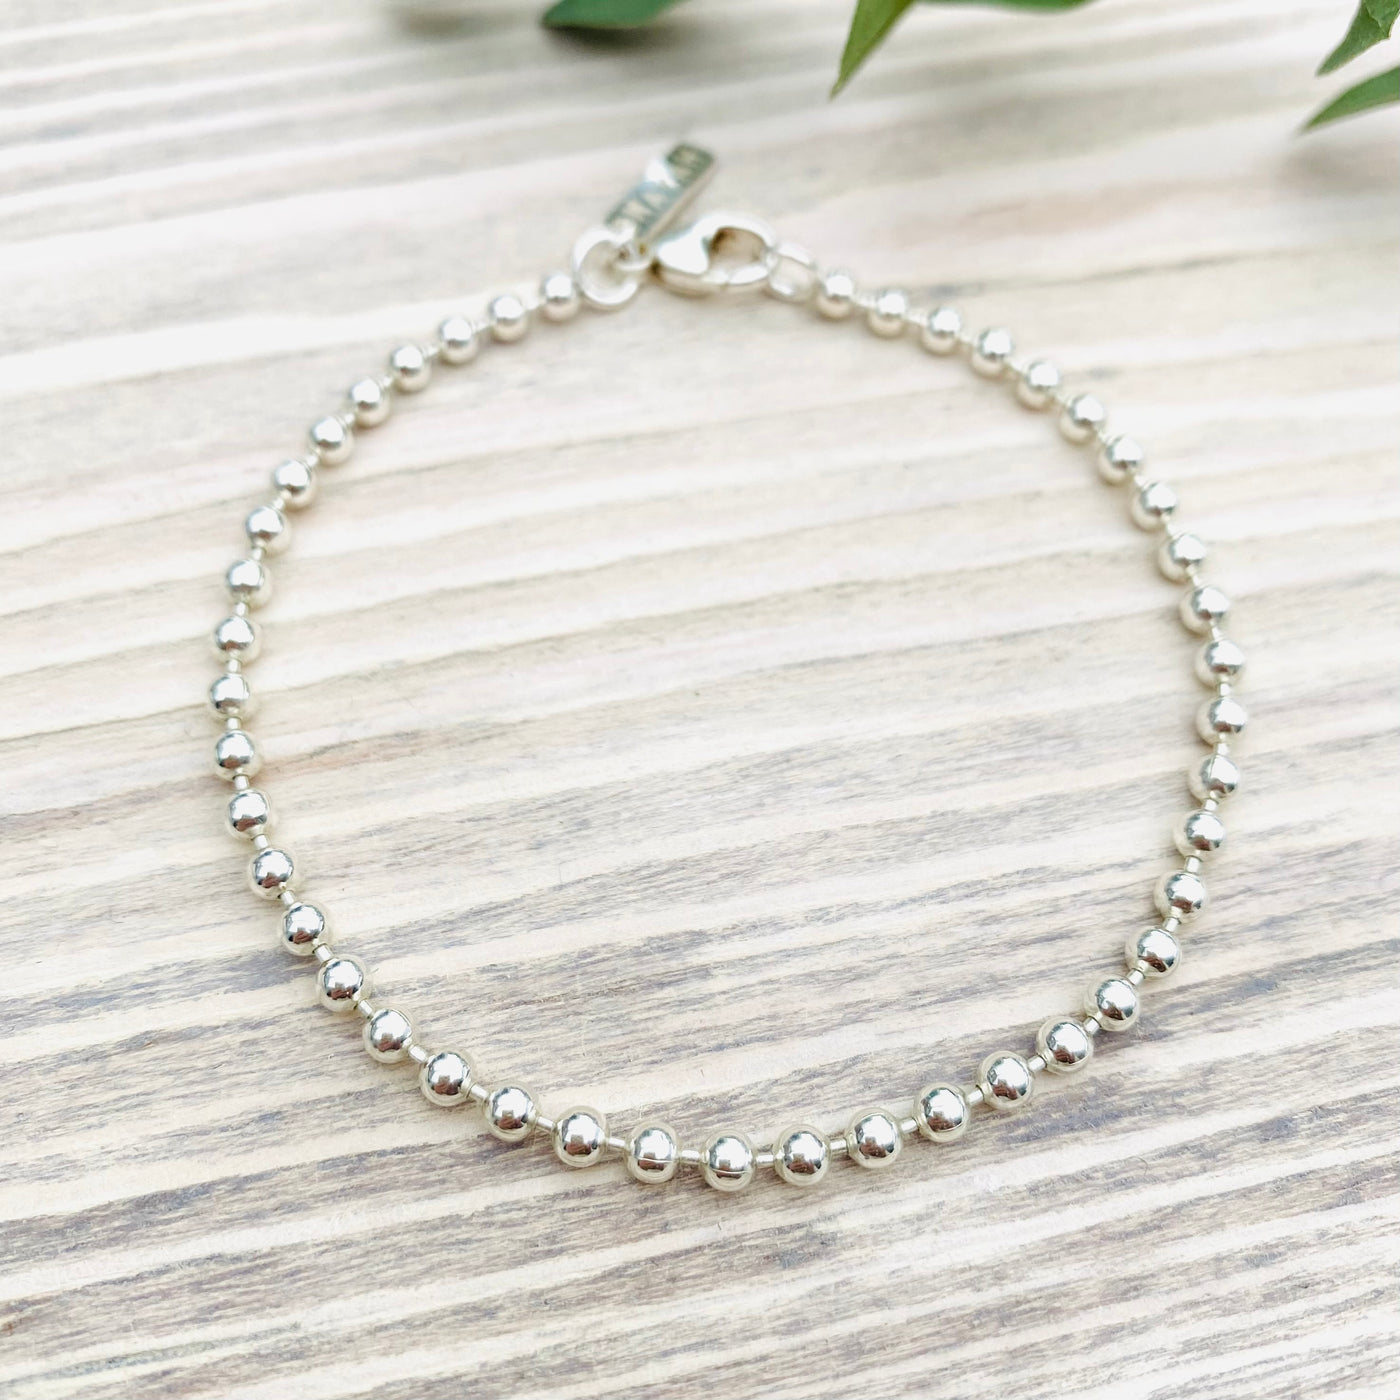 MayaH Jewellery Ball Chain Bracelet in Silver